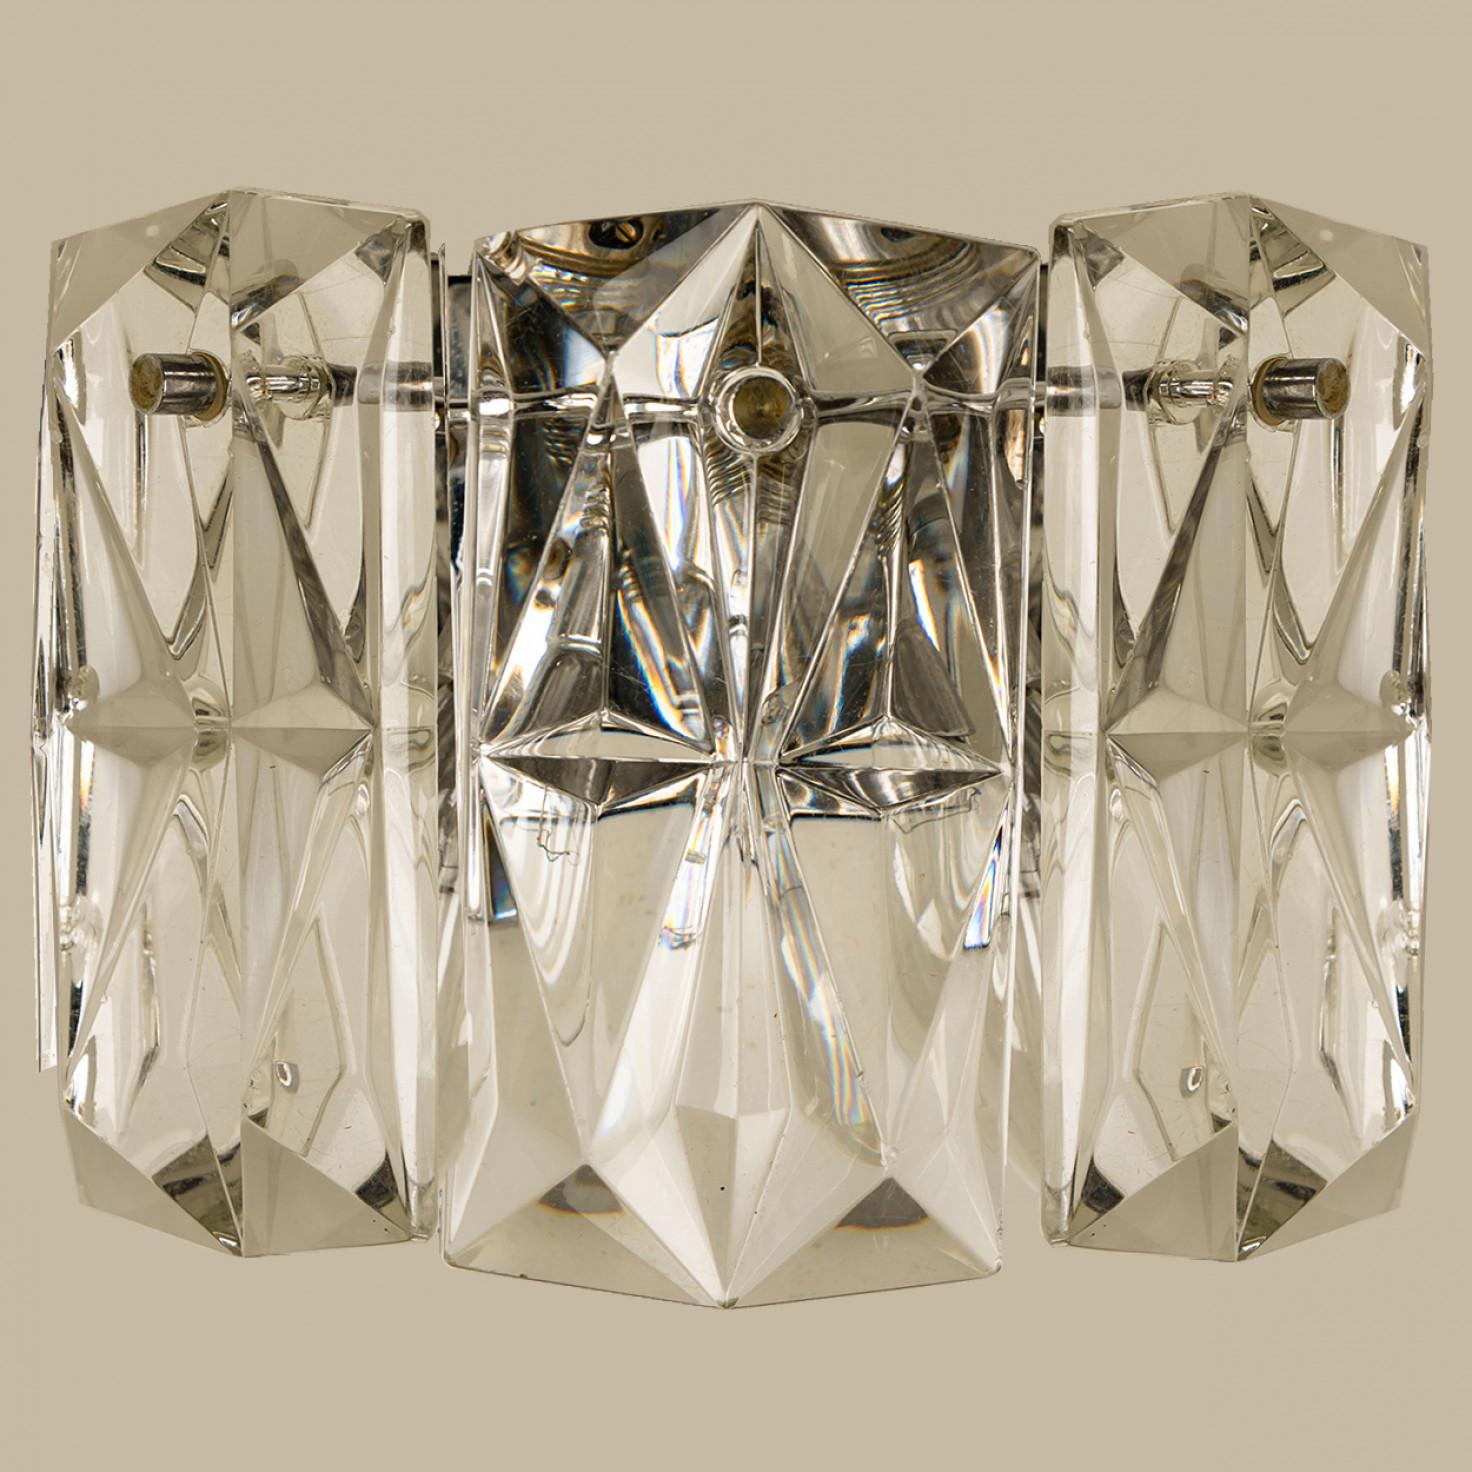 Mehrere luxuriöse Wandleuchter aus dickem Diamantkristall mit Chromrahmen des berühmten Herstellers Kinkeldey. Sehr elegante Beleuchtungskörper, die zu allen Einrichtungsstilen passen. Die Kristalle sind sorgfältig so geschliffen, dass sie das Licht